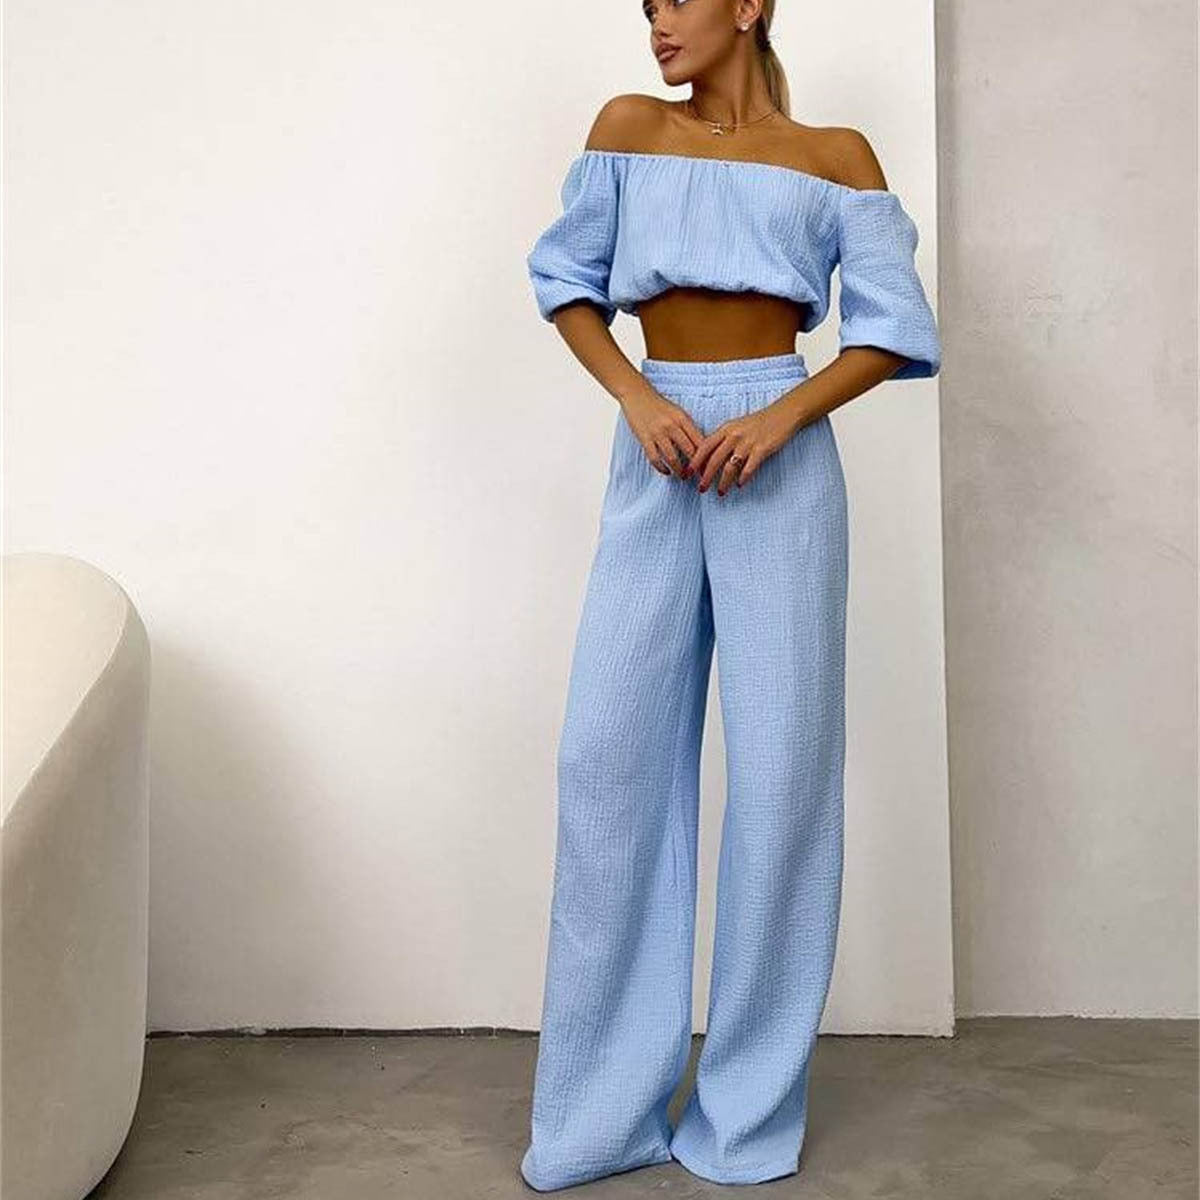 Pants set- Women's Cotton Vacation Outfit Set - Crop Top & Pants- Light Blue- Chuzko Women Clothing